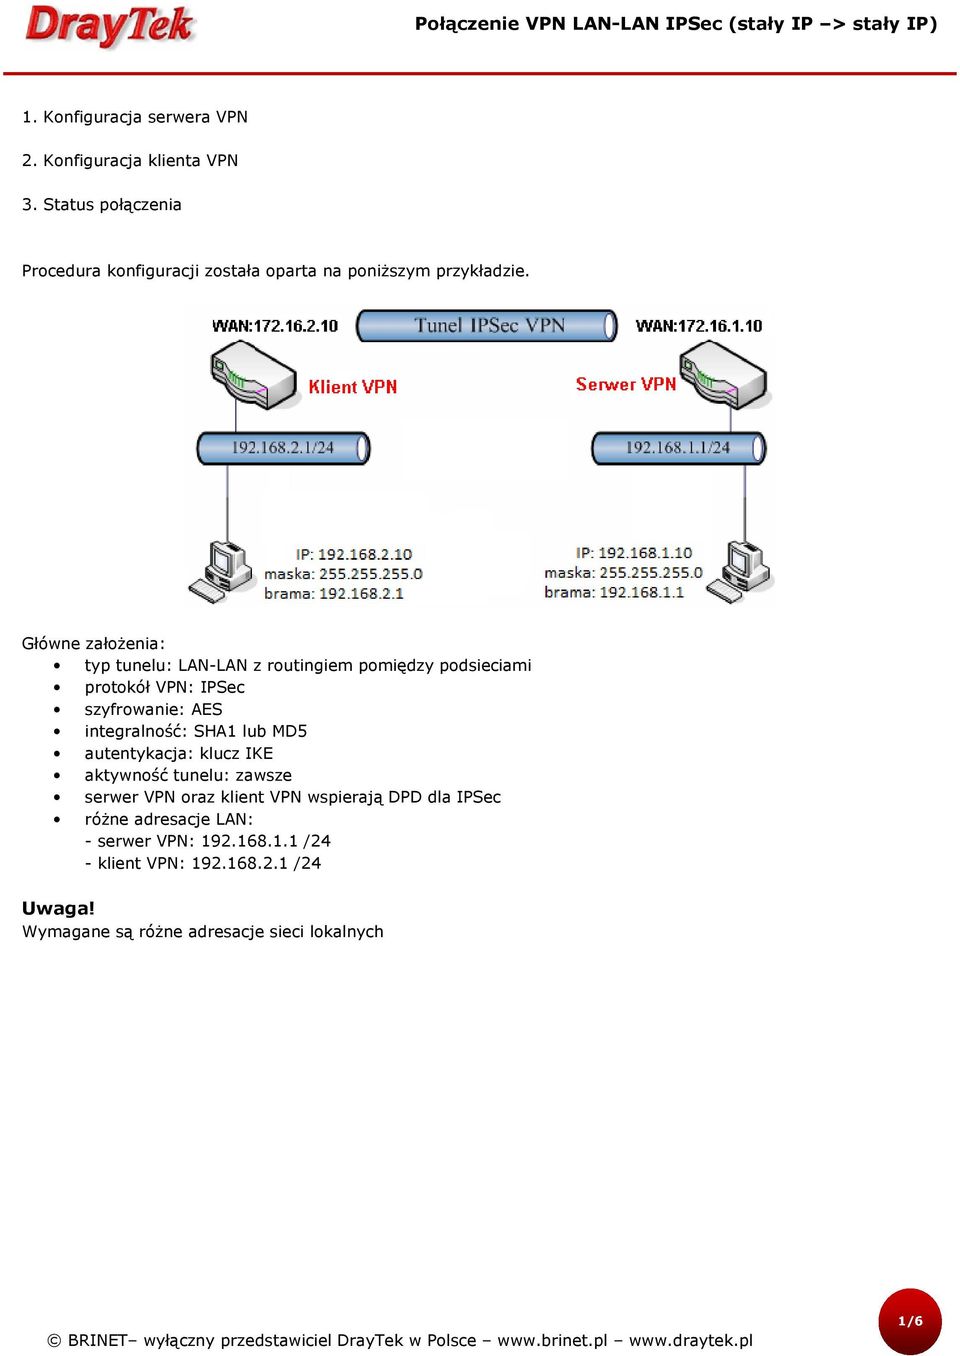 Główne założenia: typ tunelu: LAN-LAN z routingiem pomiędzy podsieciami protokół VPN: IPSec szyfrowanie: AES integralność: SHA1